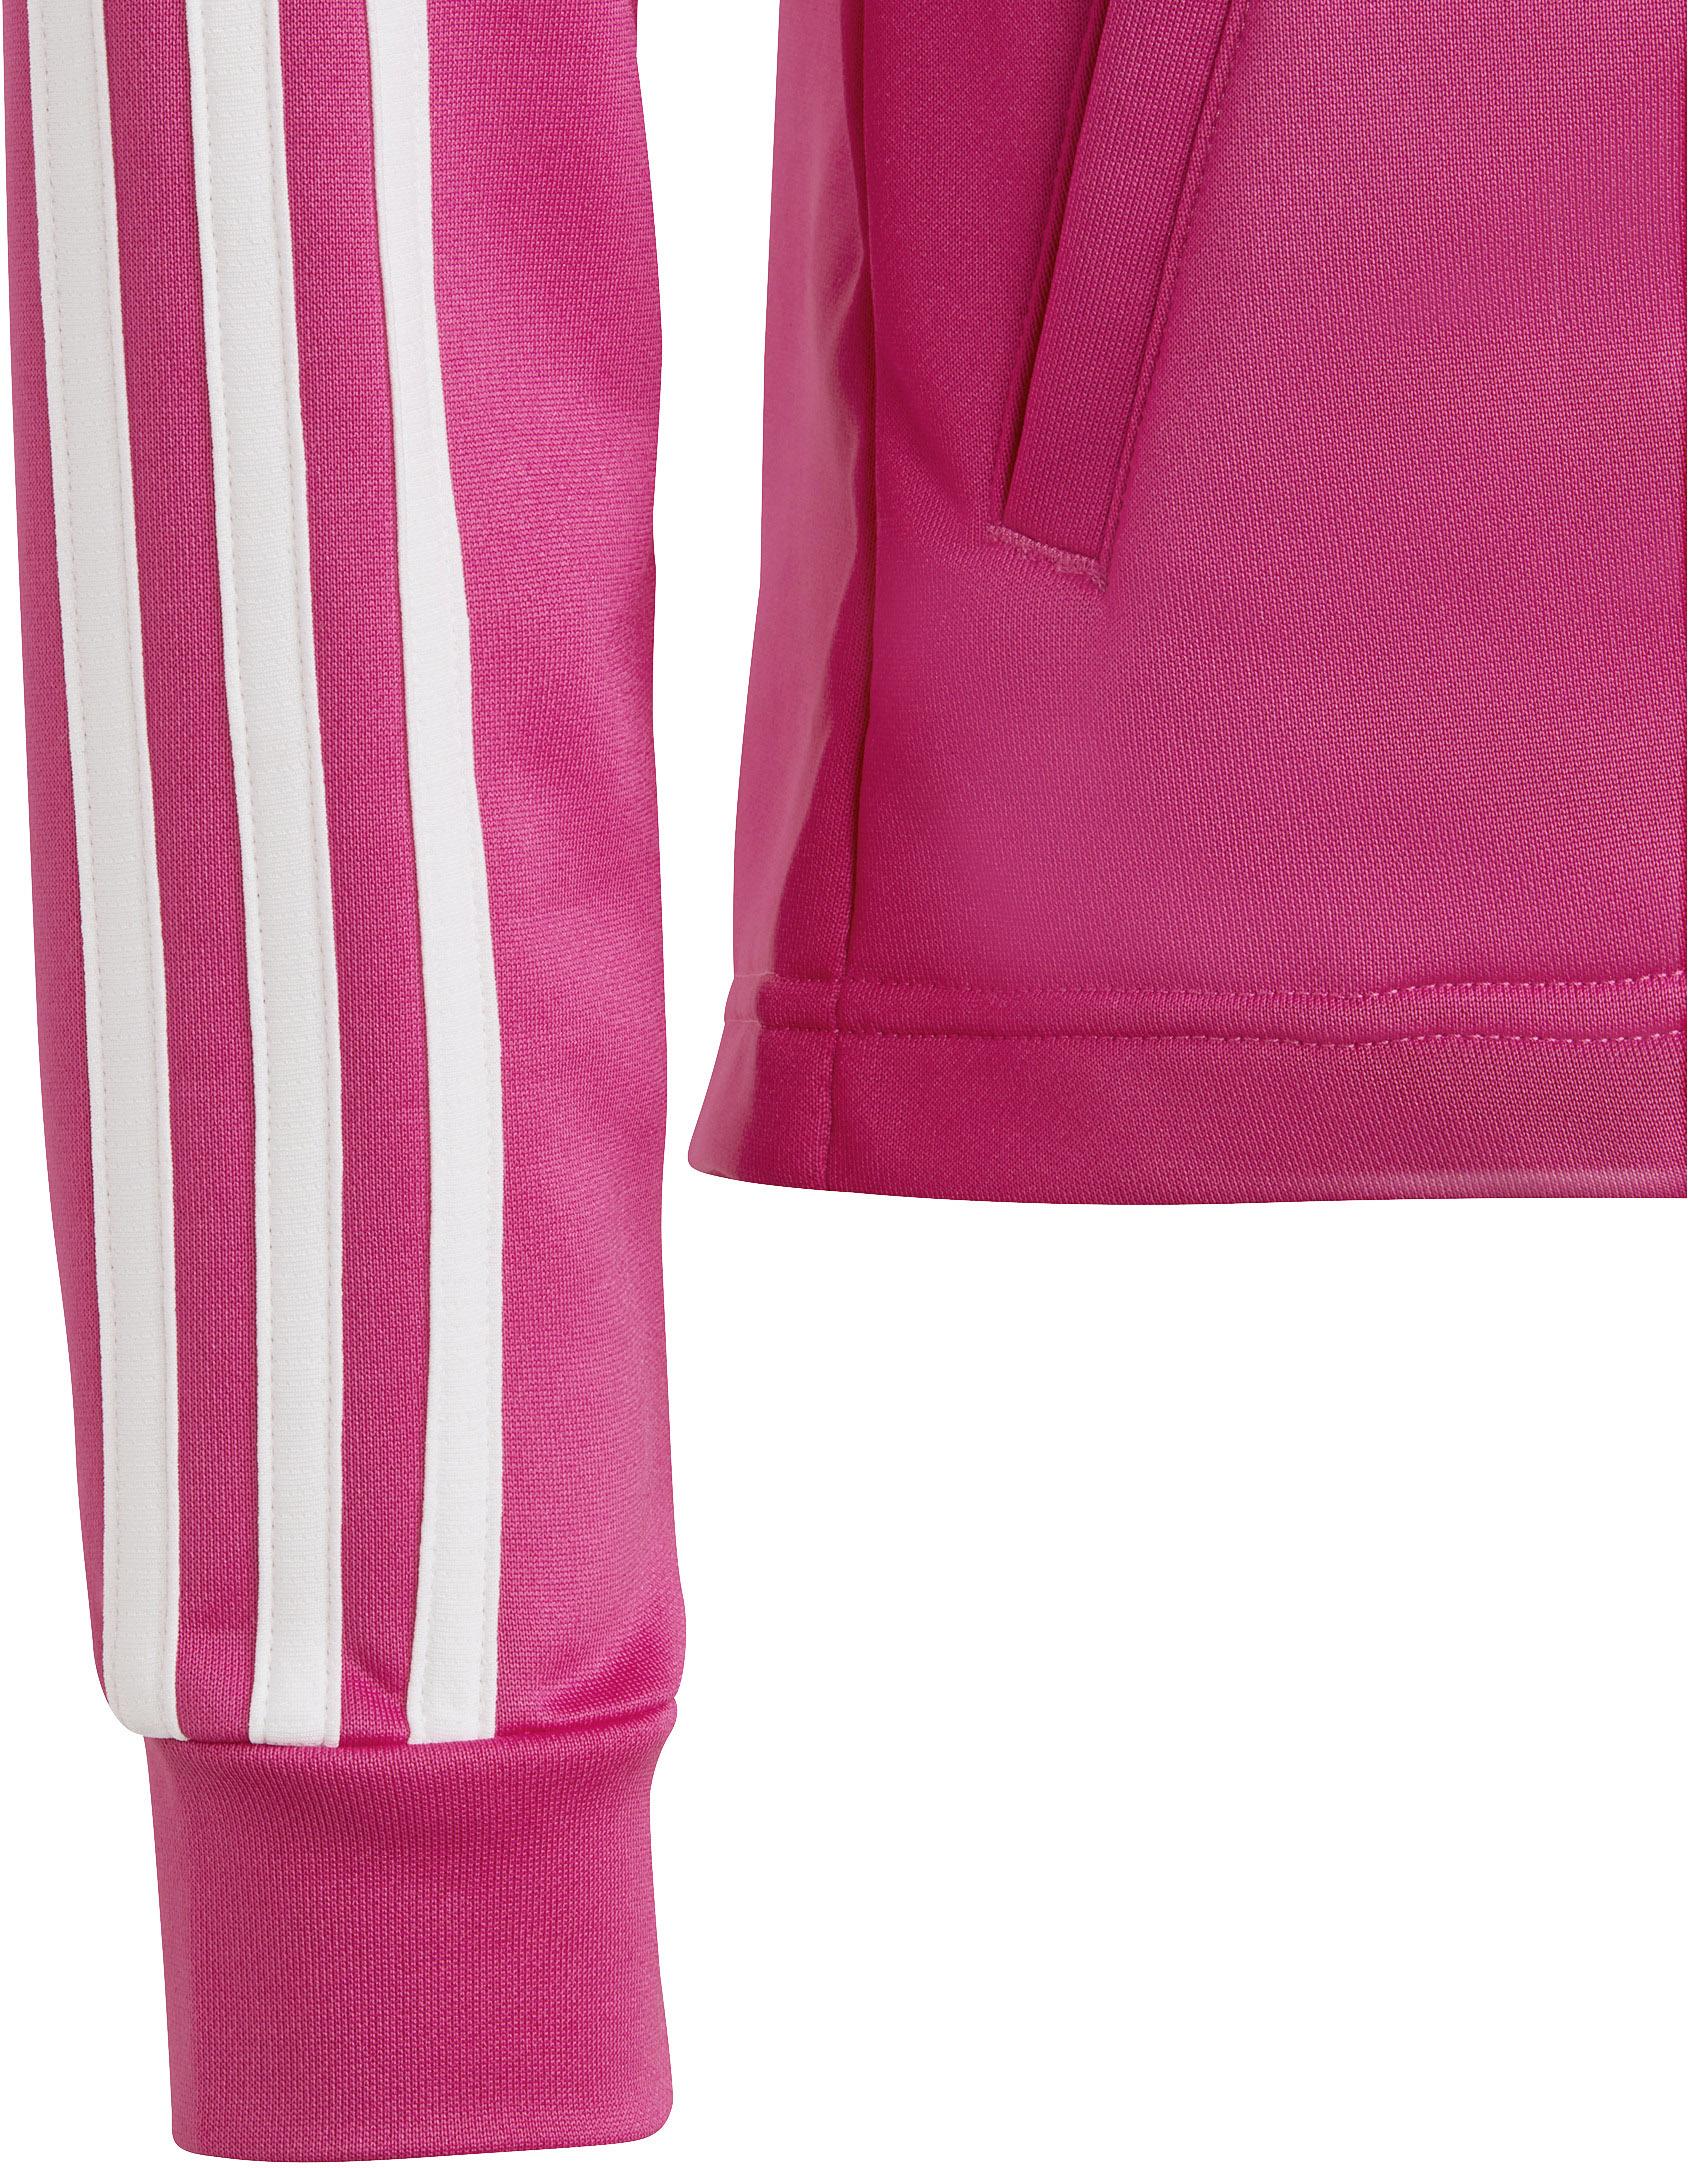 SportScheck Mädchen im Shop kaufen Adidas semi lucid Trainingsjacke von Online fuchsia-white